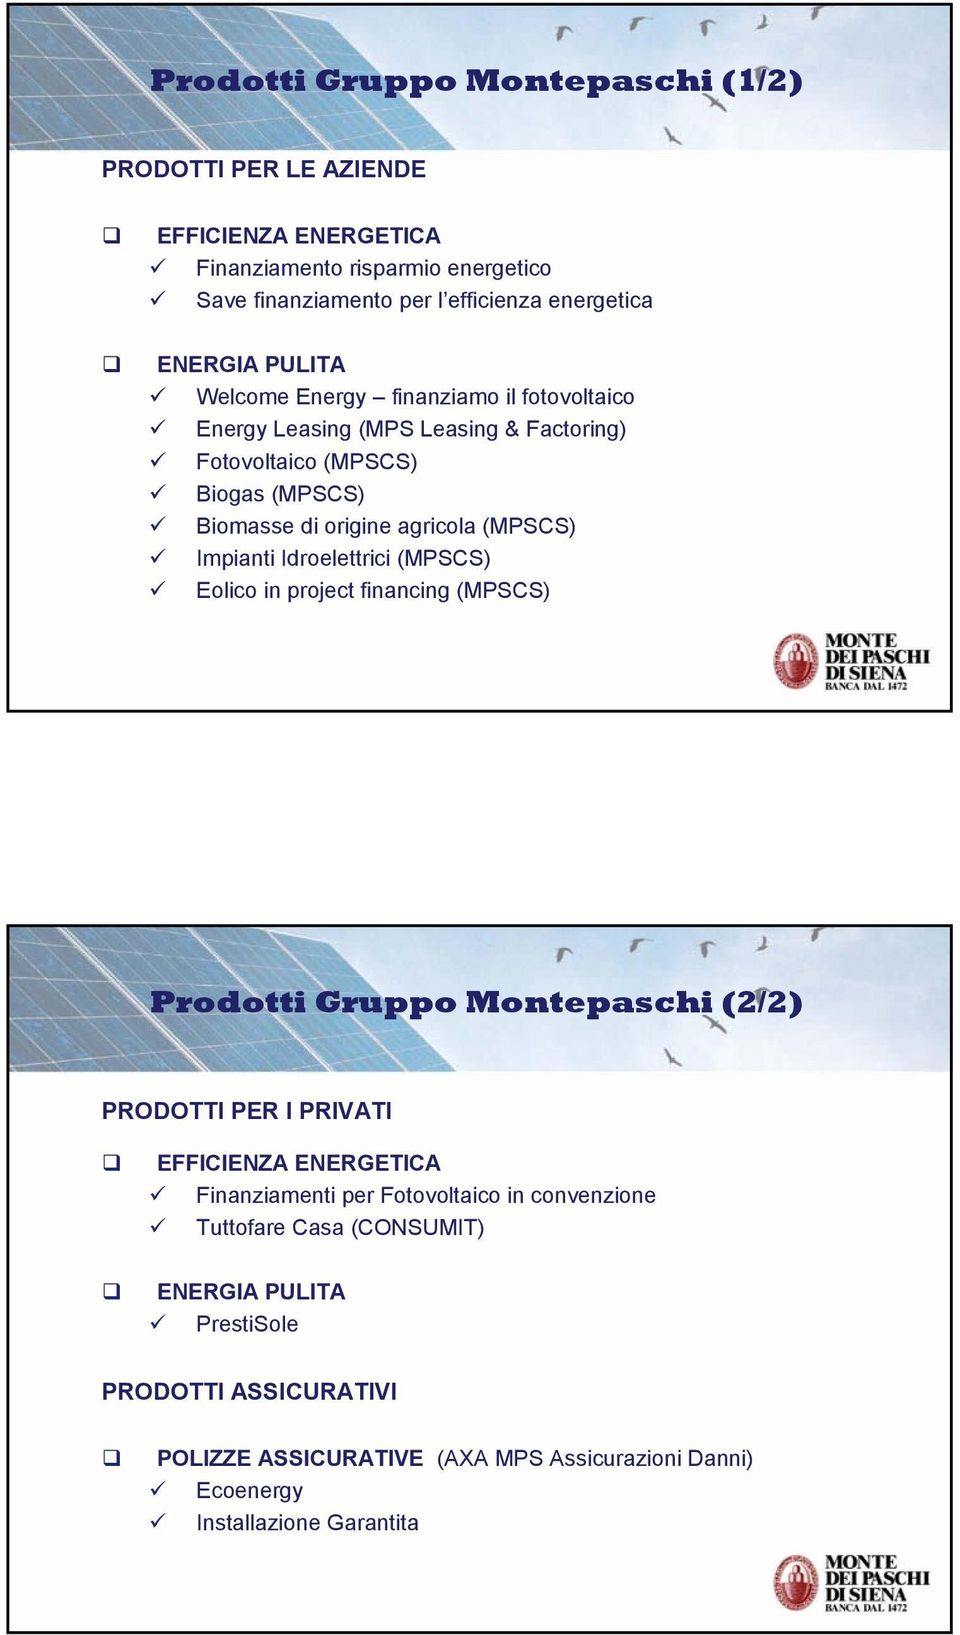 Impianti Idroelettrici (MPSCS) Eolico in project financing (MPSCS) Prodotti Gruppo Montepaschi (2/2) PRODOTTI PER I PRIVATI EFFICIENZA ENERGETICA Finanziamenti per